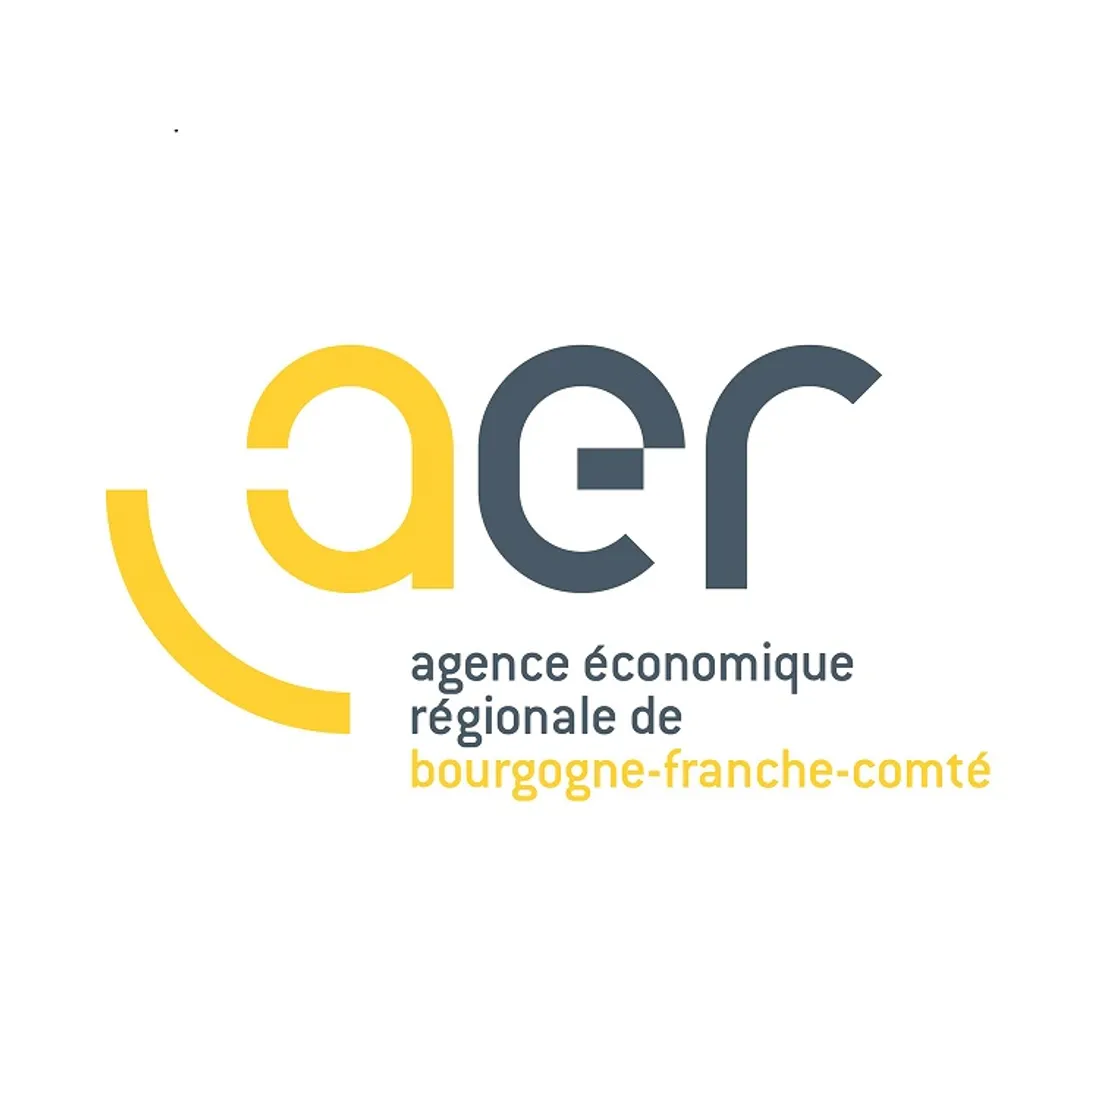 Ce forum est coorganisé par l’agence économique régionale de Bourgogne-Franche-Comté 